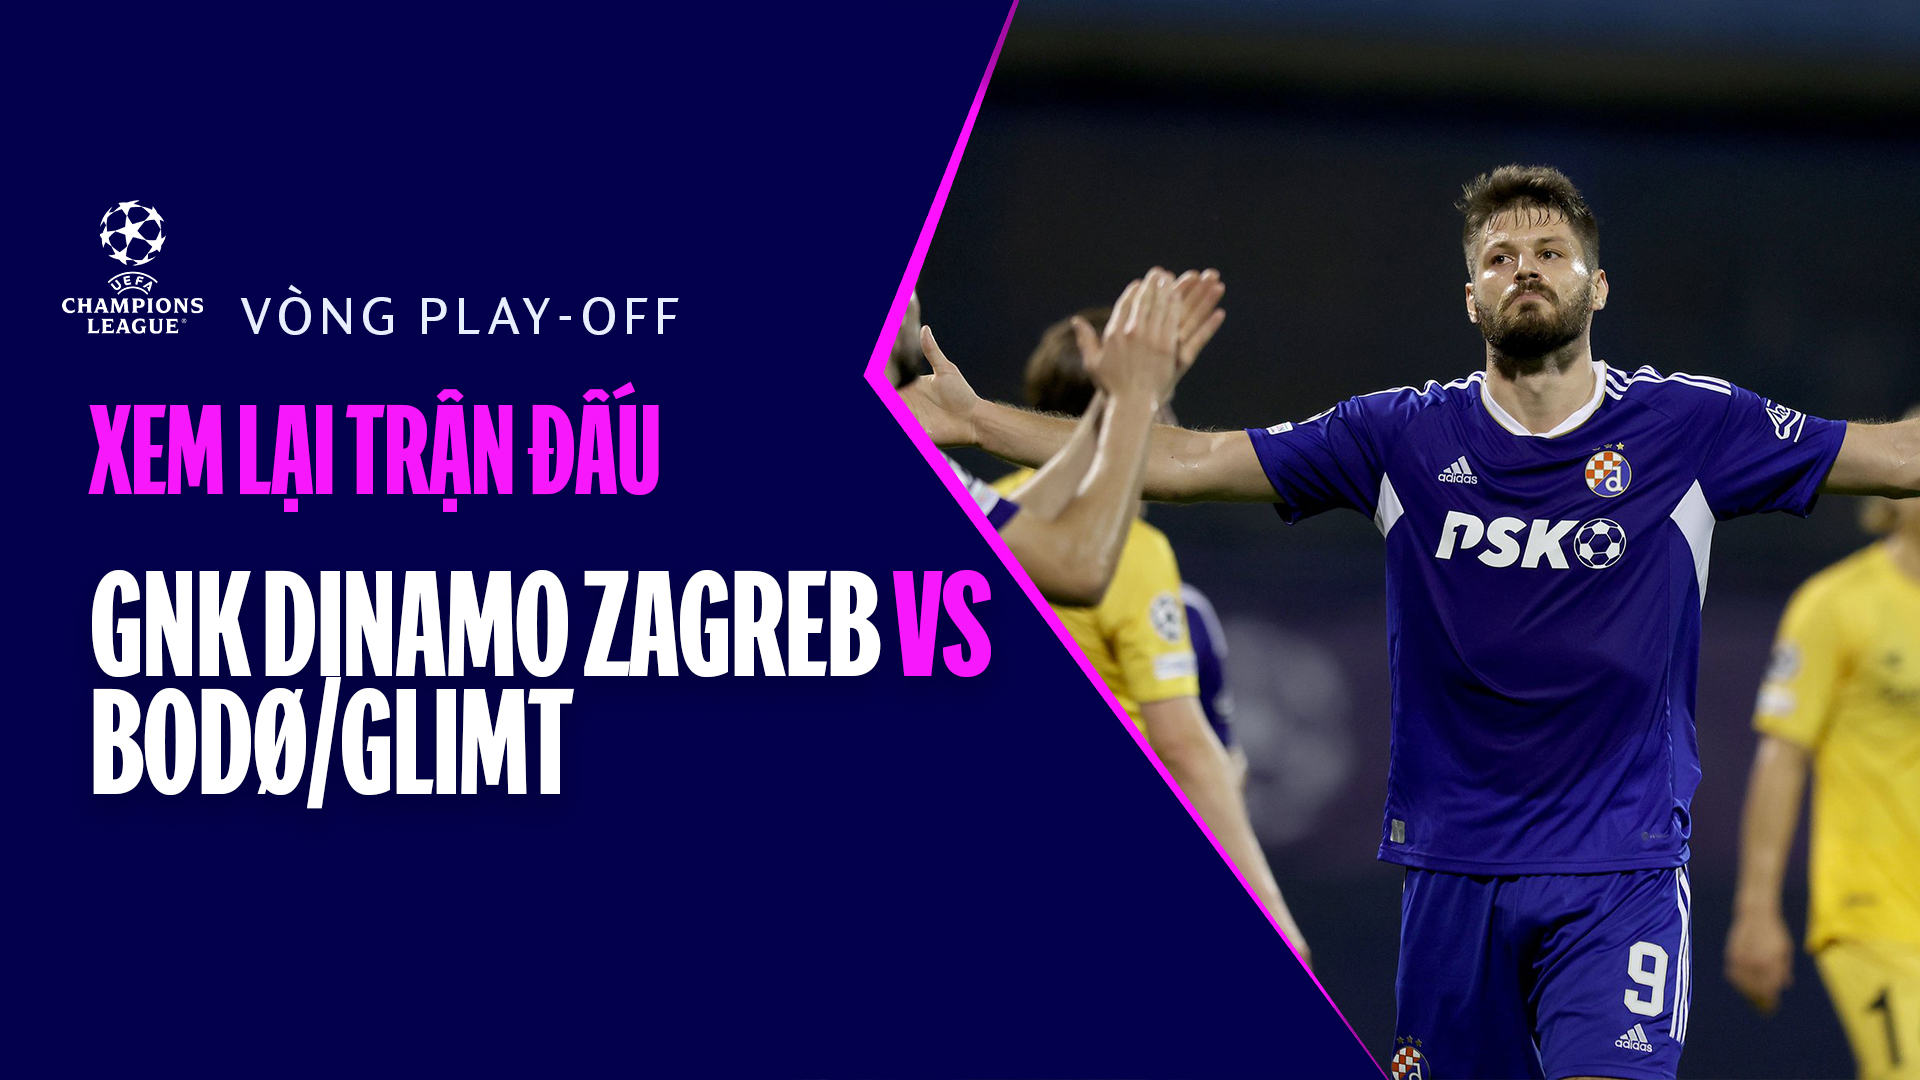 Dinamo Zagreb - Bodo/Glimt - Champions League